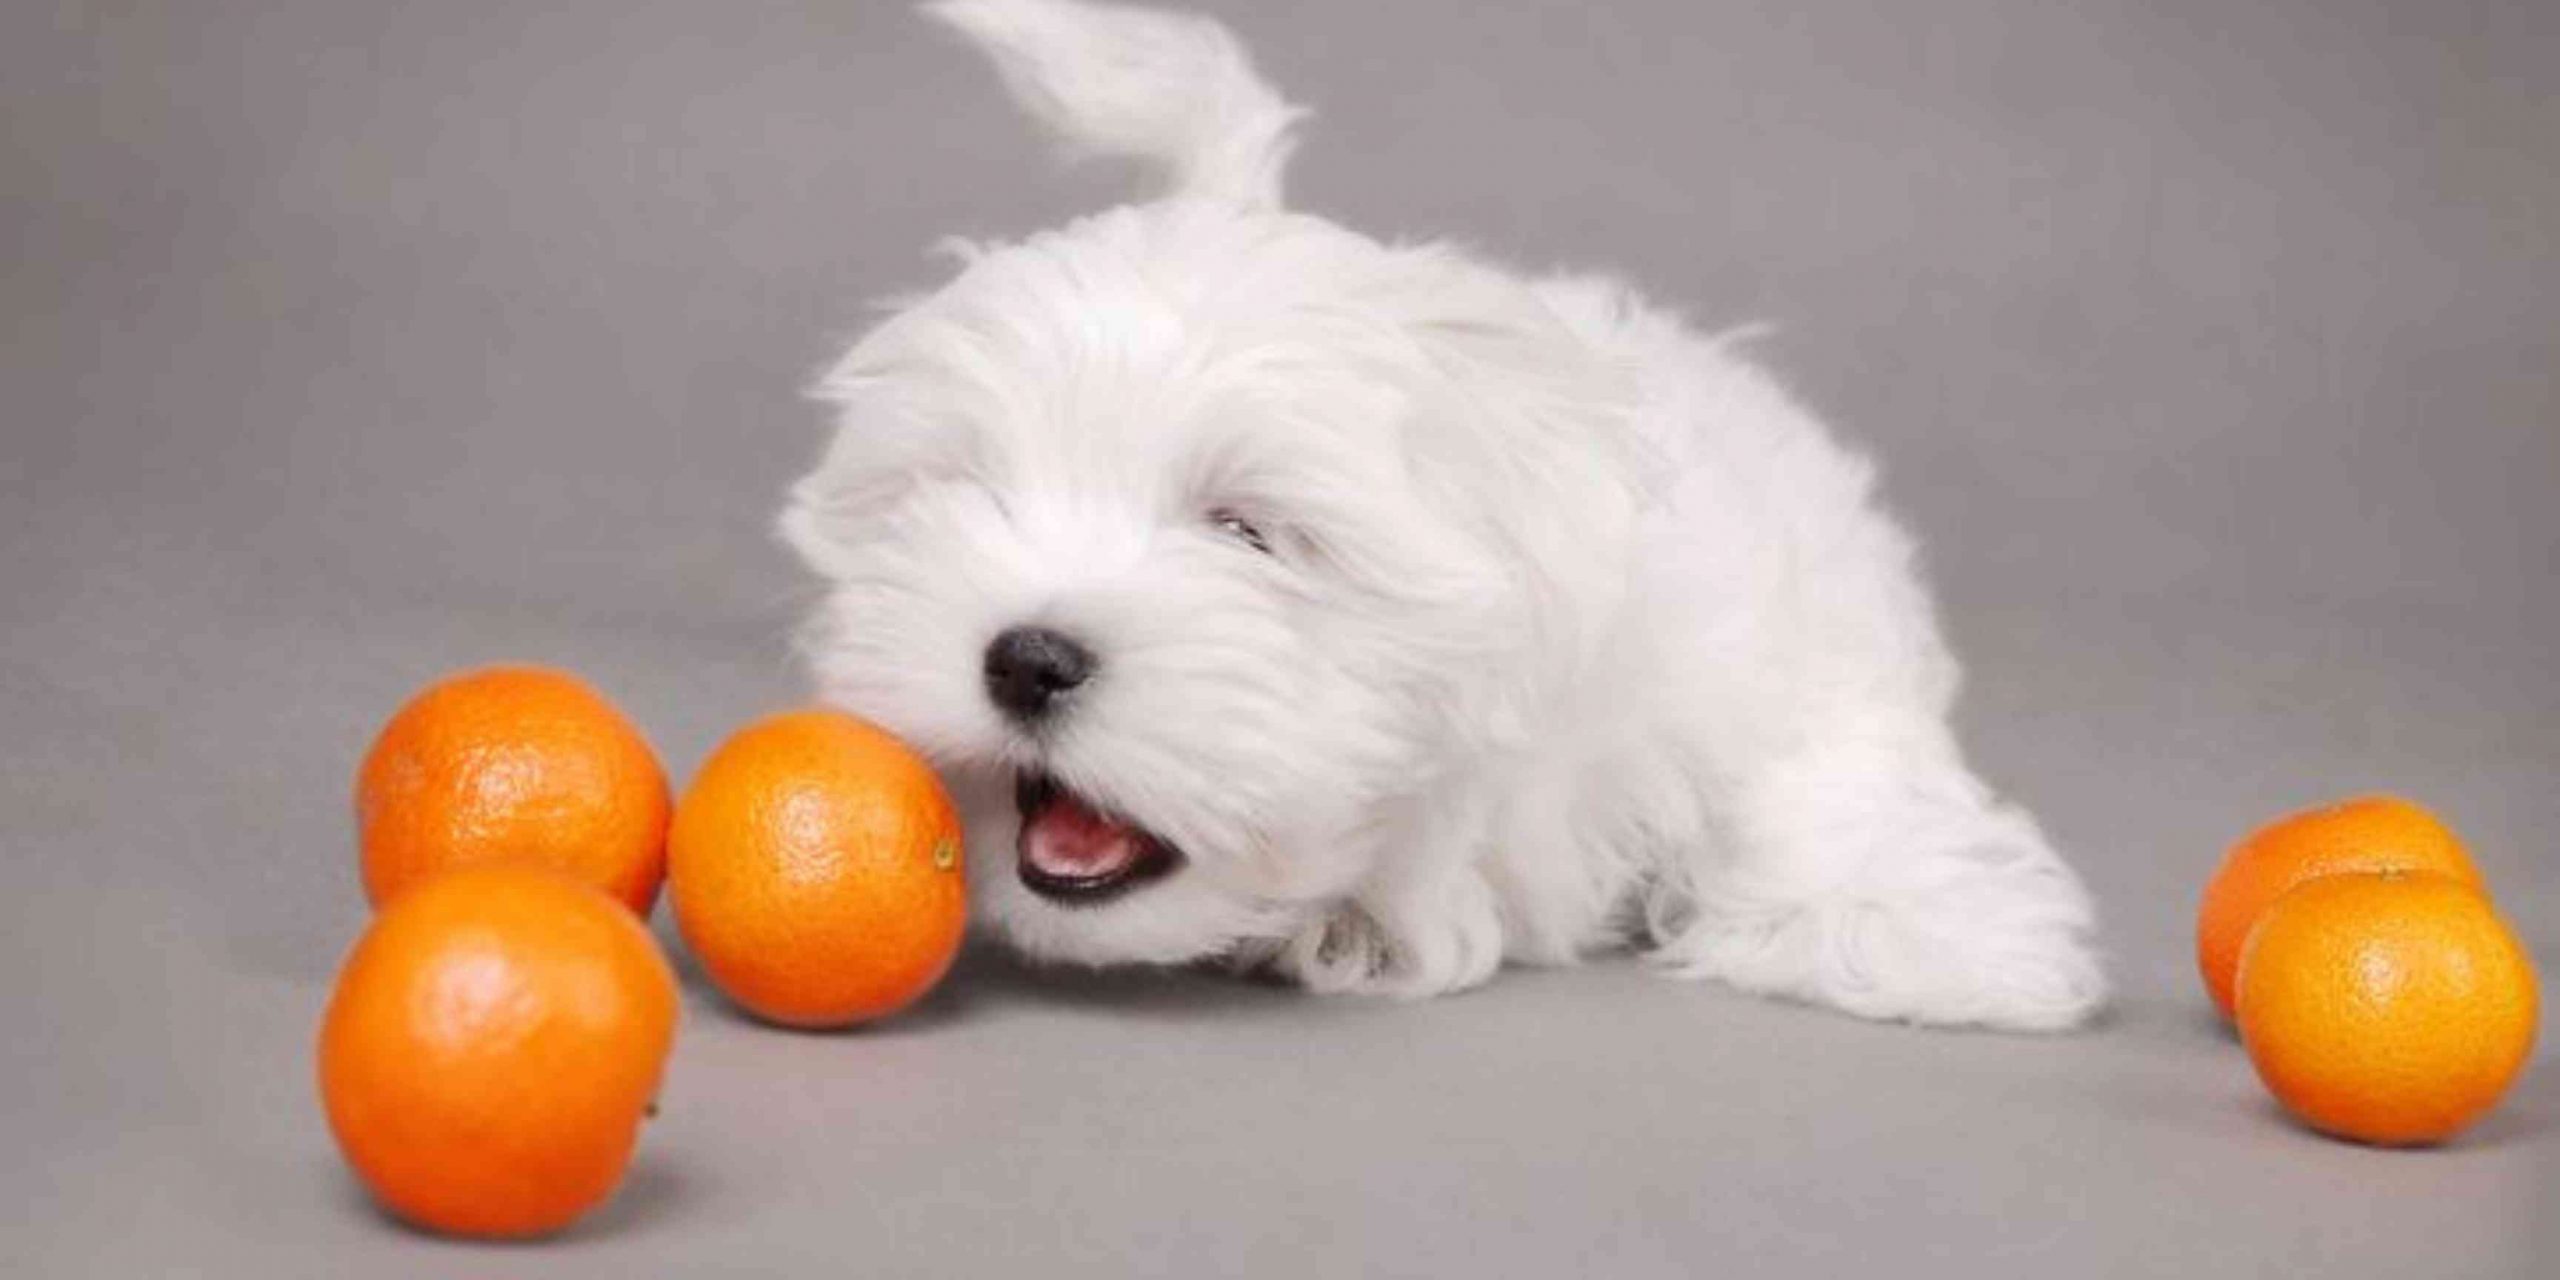 Je bekijkt nu Mogen honden mandarijn?